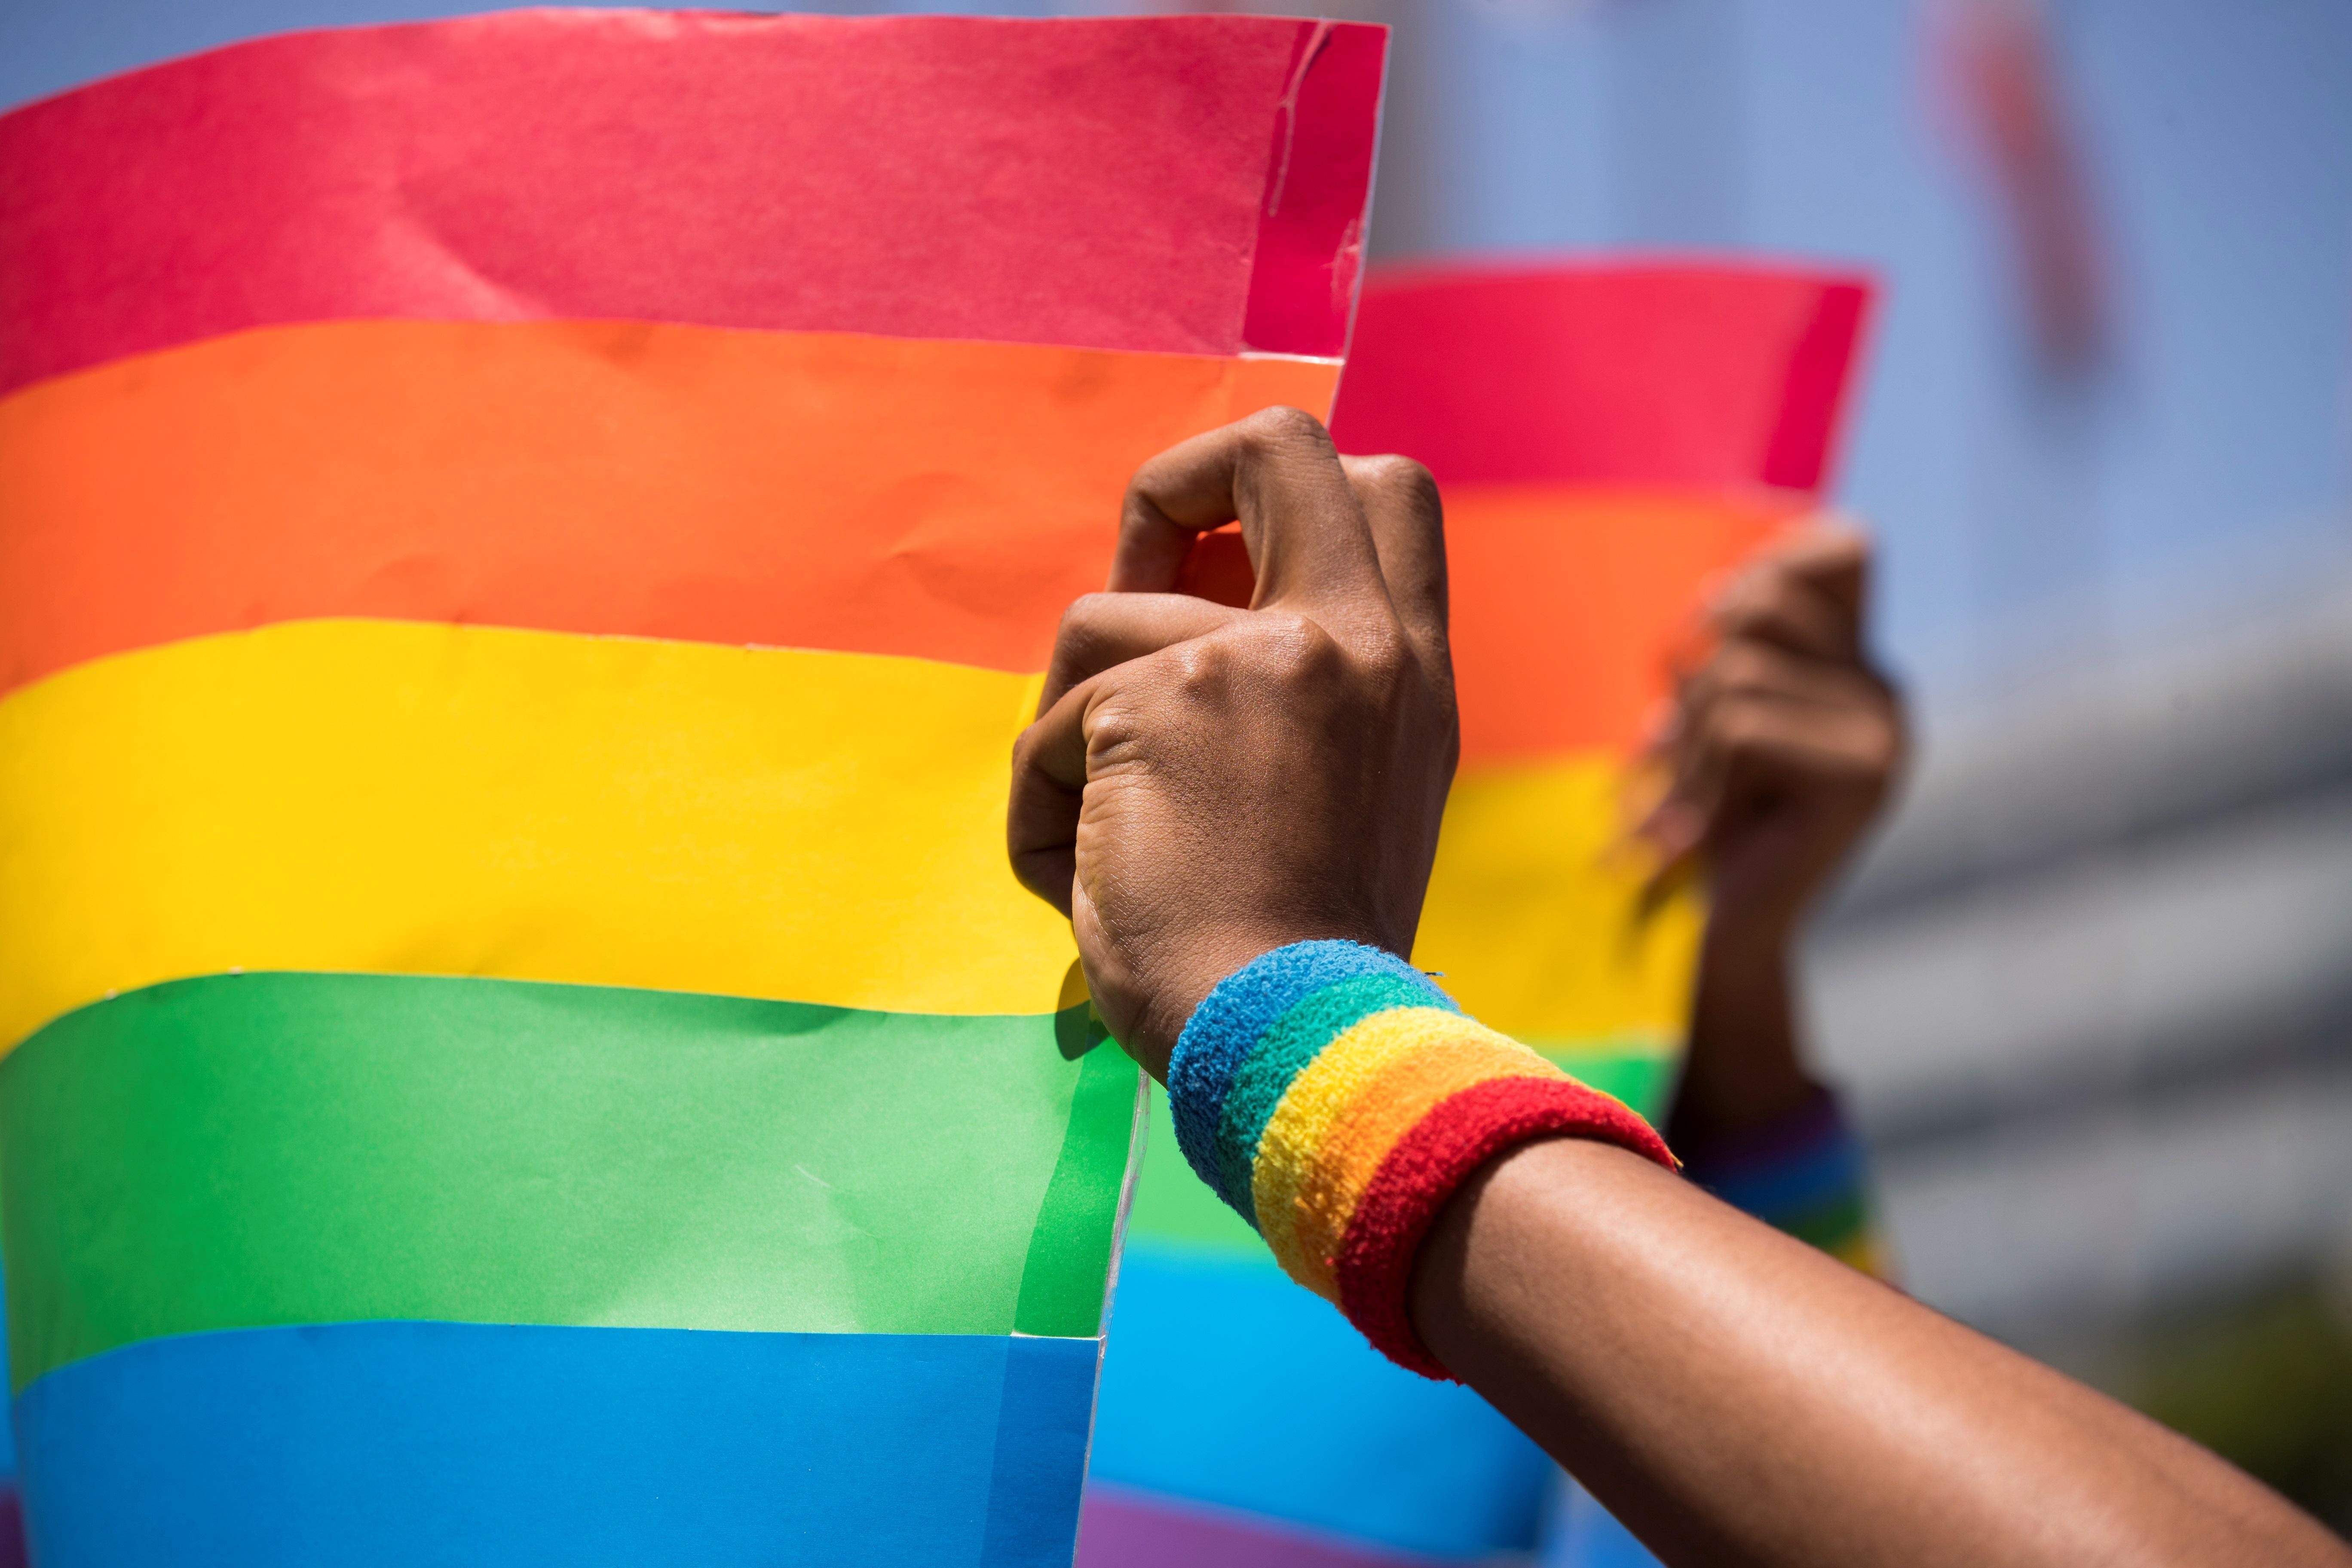 Las personas LGBTIQ+ sufren discriminación en distintos espacios, empezando por sus familias. (EFE/ Orlando Barría)
